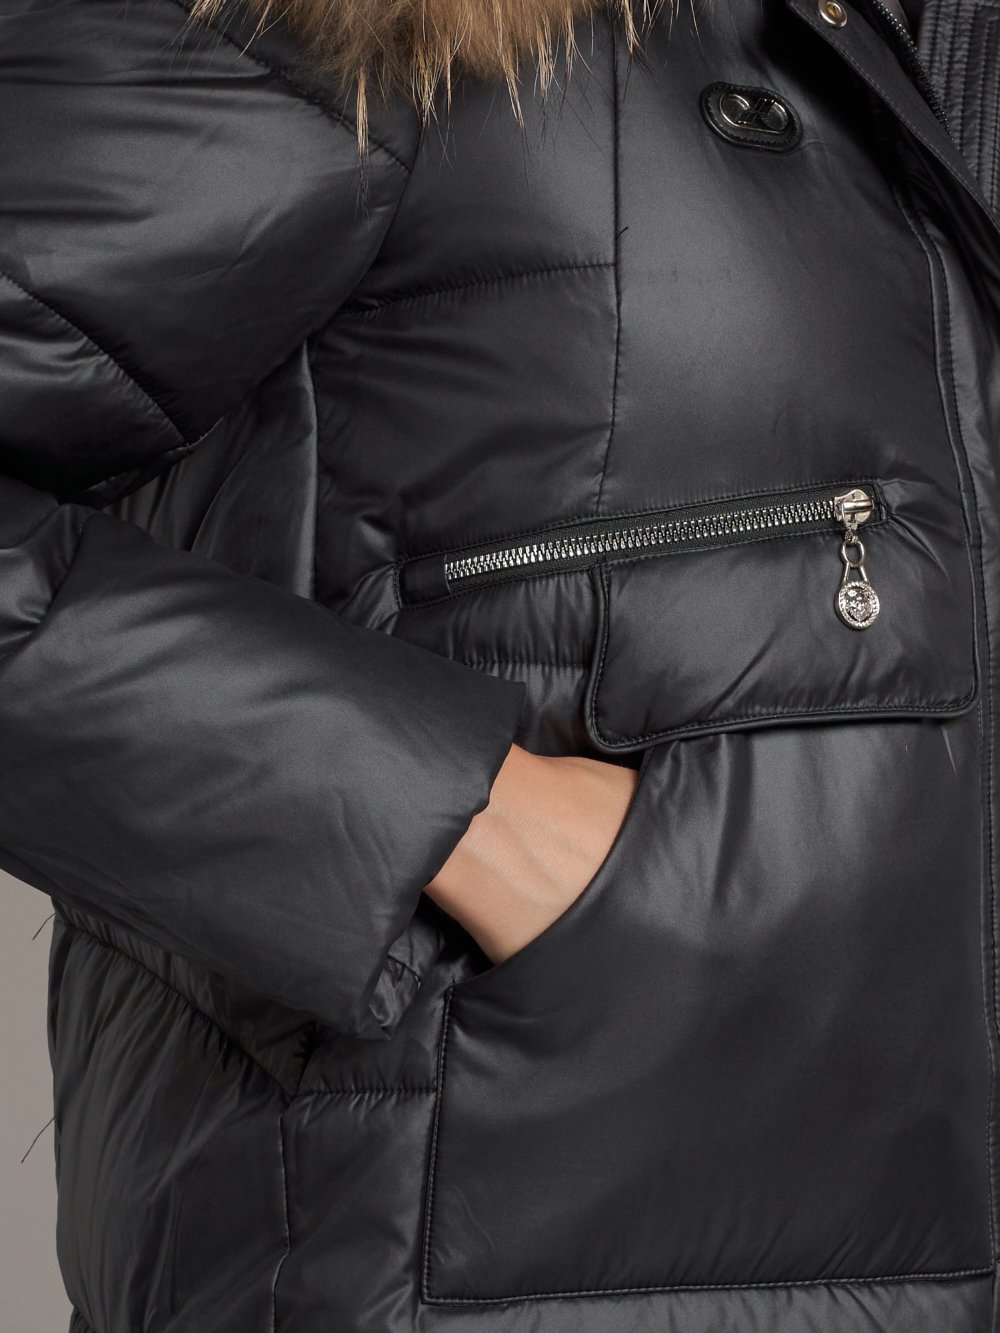 Купить куртку женскую зимнюю оптом от производителя недорого в Москве 132298Ch 1